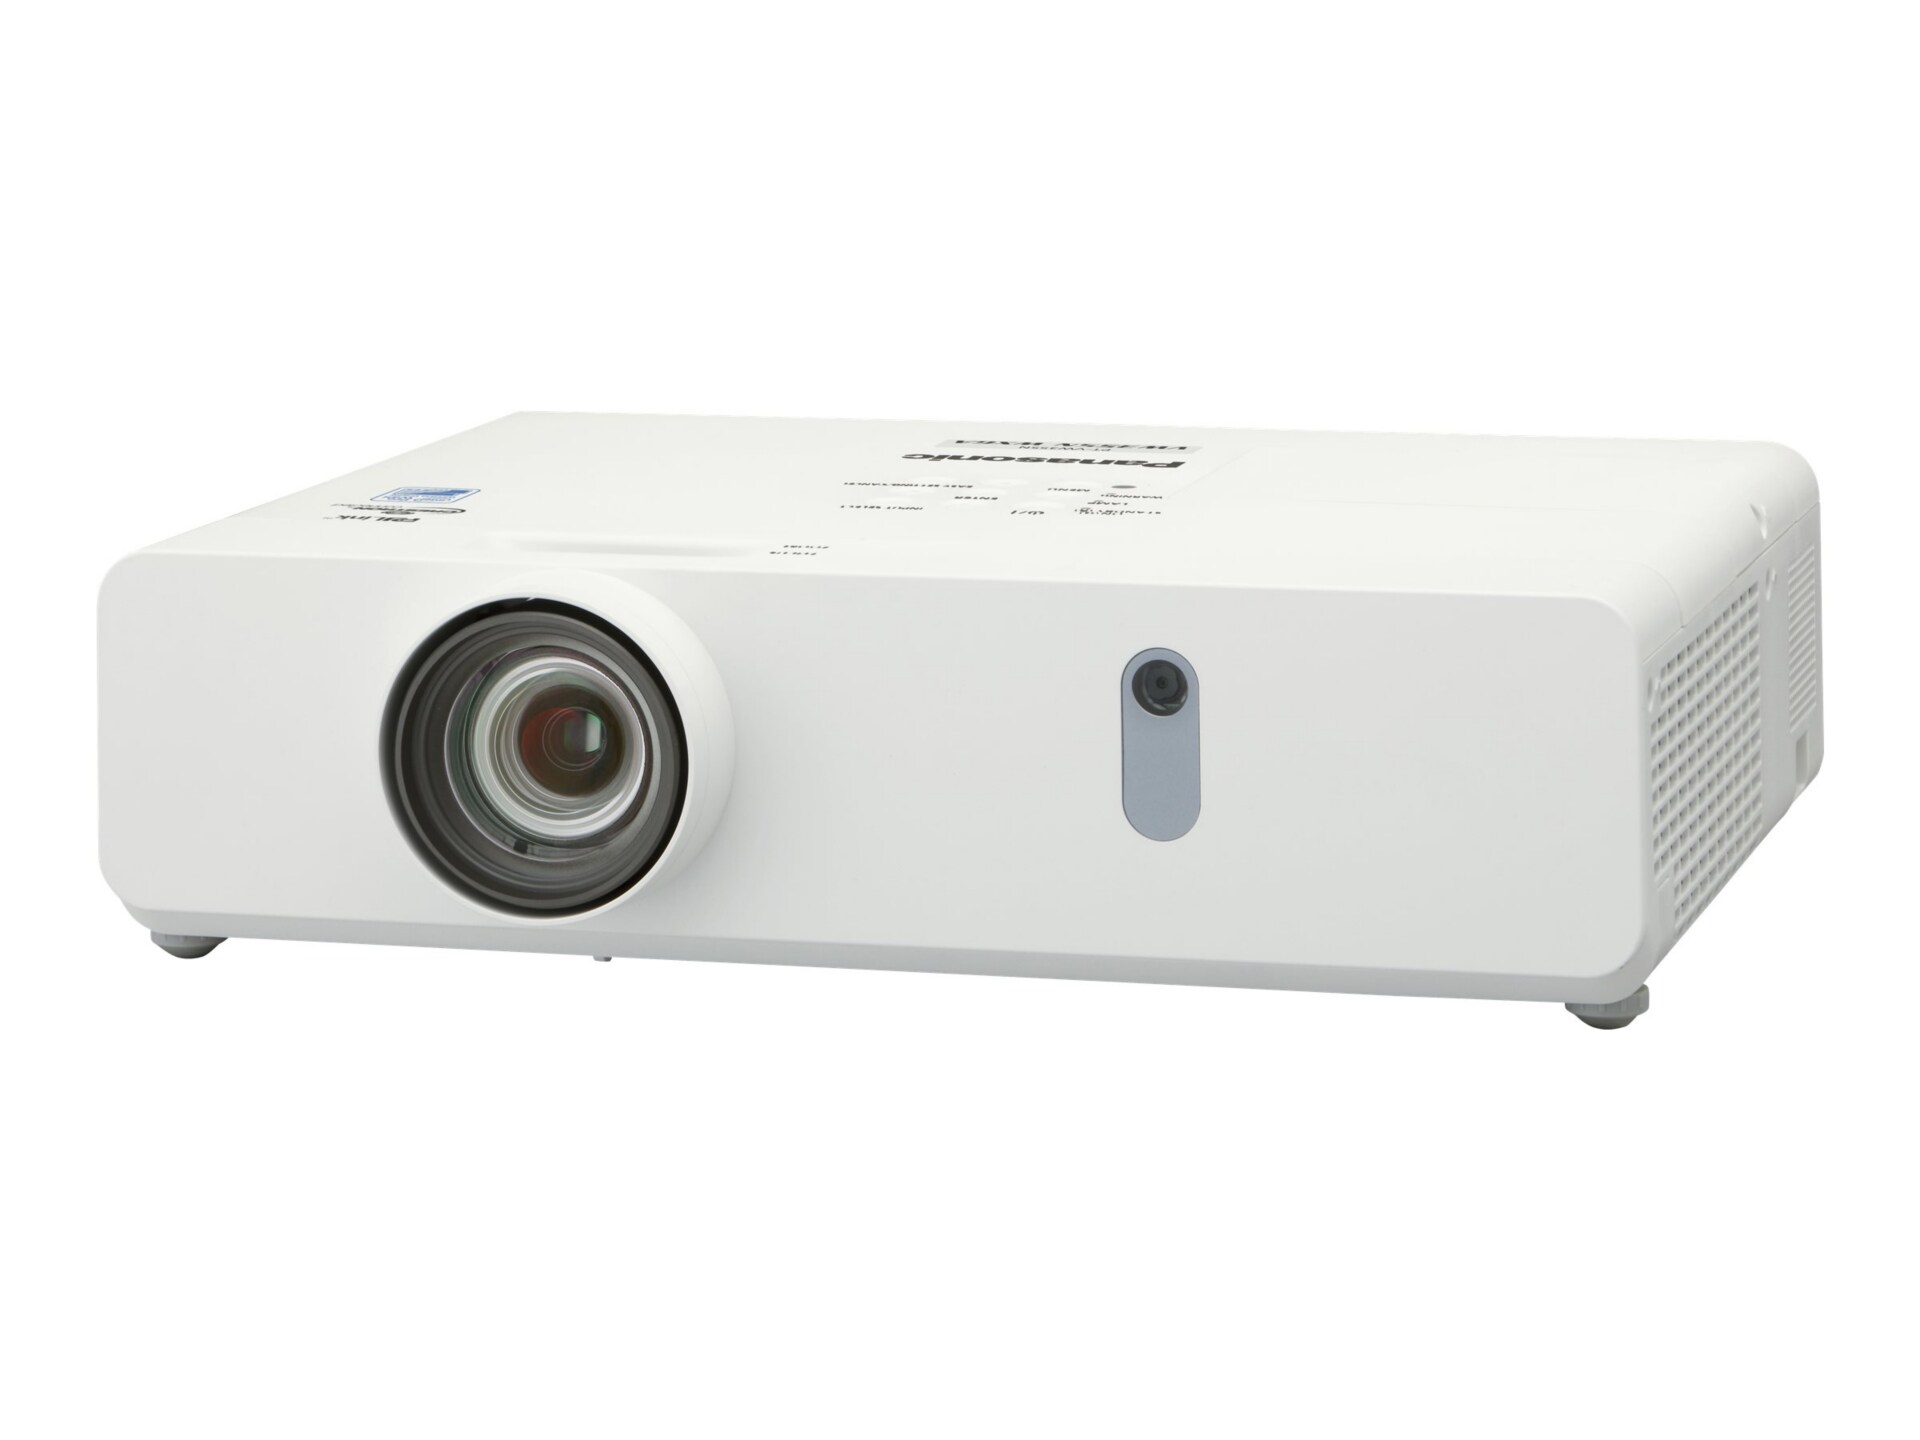 Panasonic PT-VW355NU - 3LCD projector - WiDi / 802.11a/b/g/n wireless / Miracast Wi-Fi Display